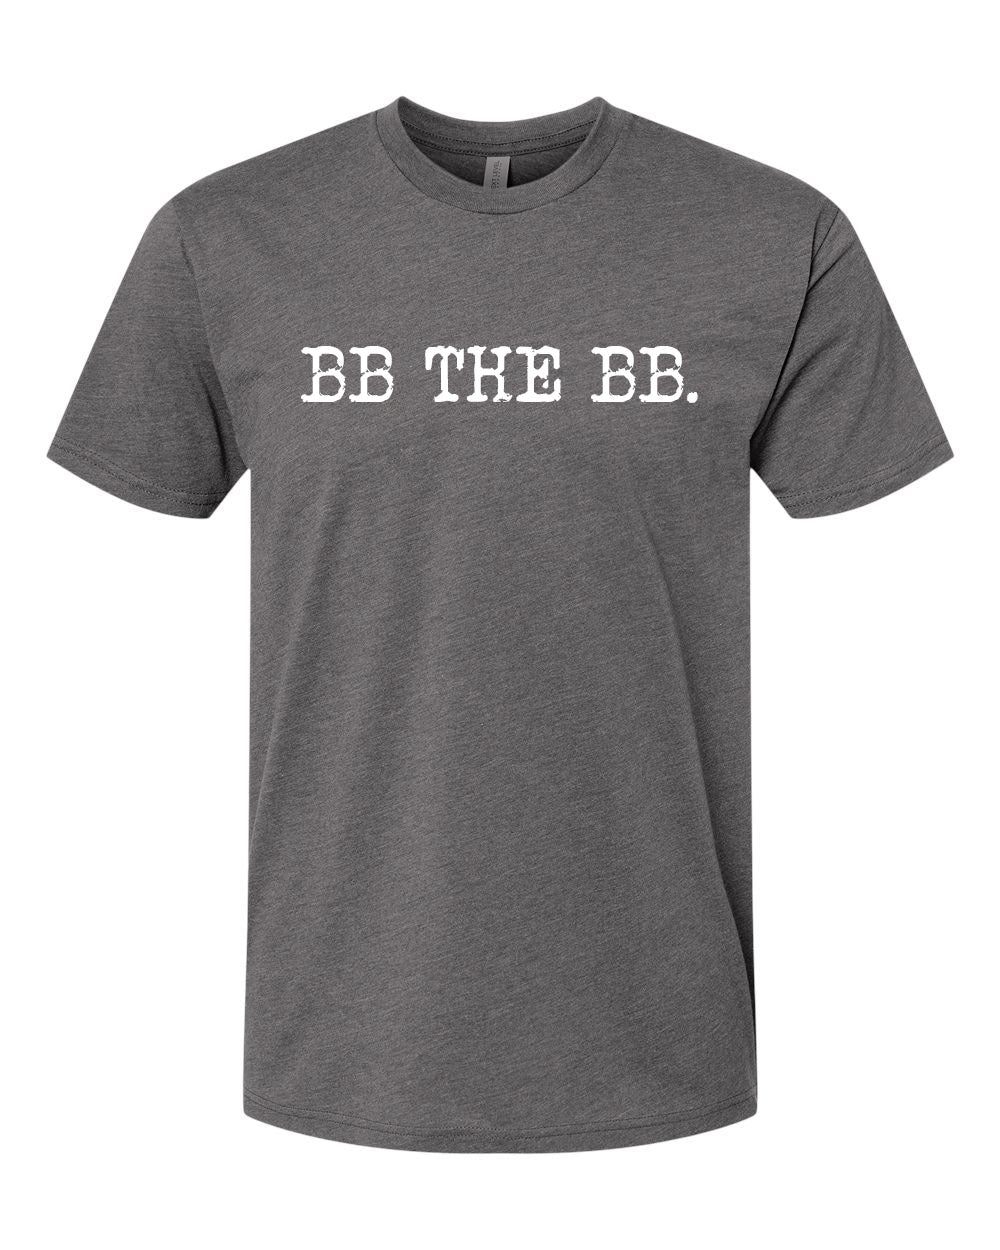 BB the BB t-shirt